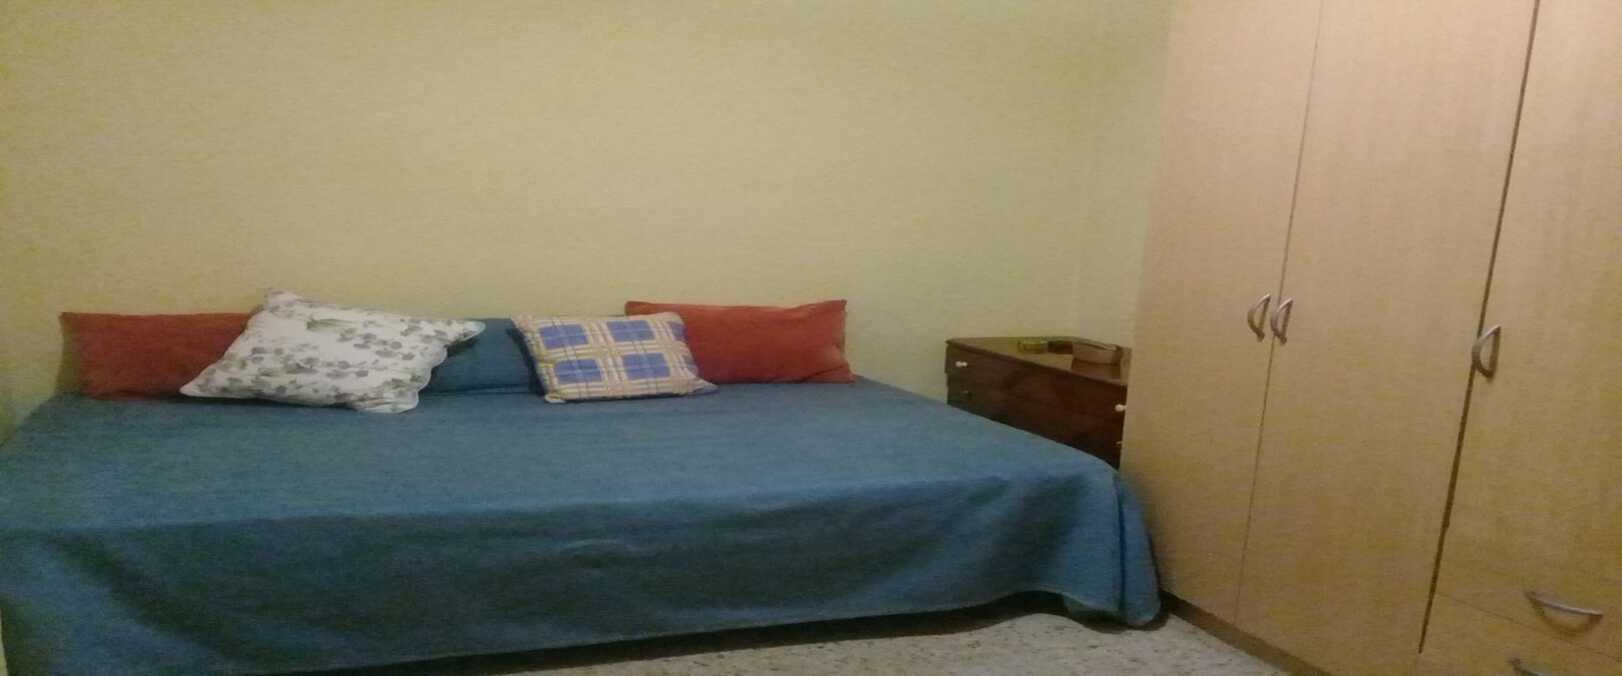 Habitación de Alexandra, inmigrante colombiana que vive en un piso compartido / CEDIDA